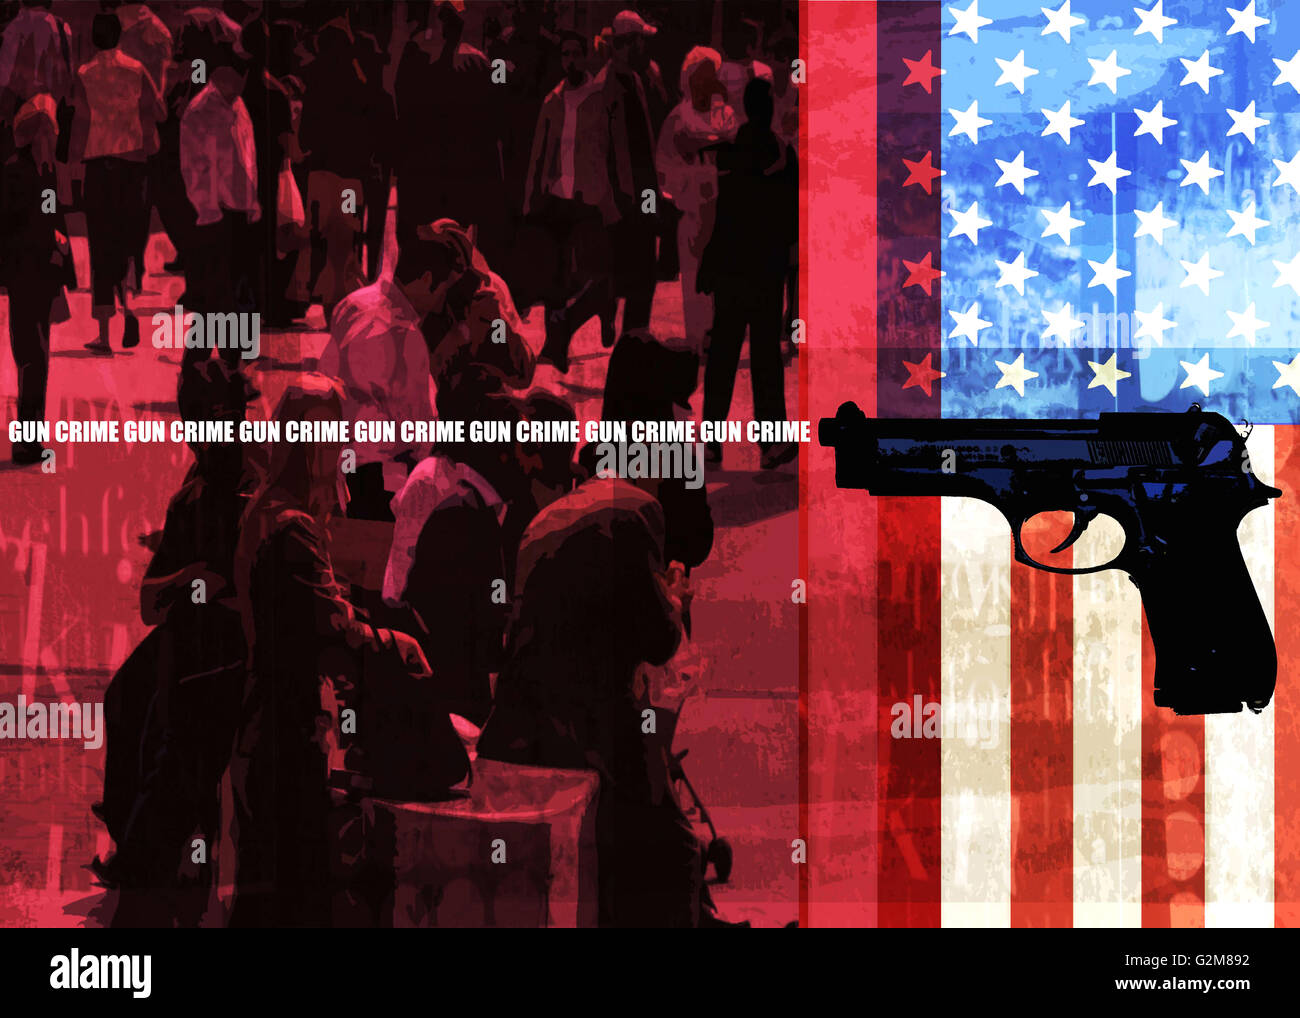 Überfüllte Straße, amerikanische Flagge, Waffe und Schild 'Waffenkriminalität" Stockfoto